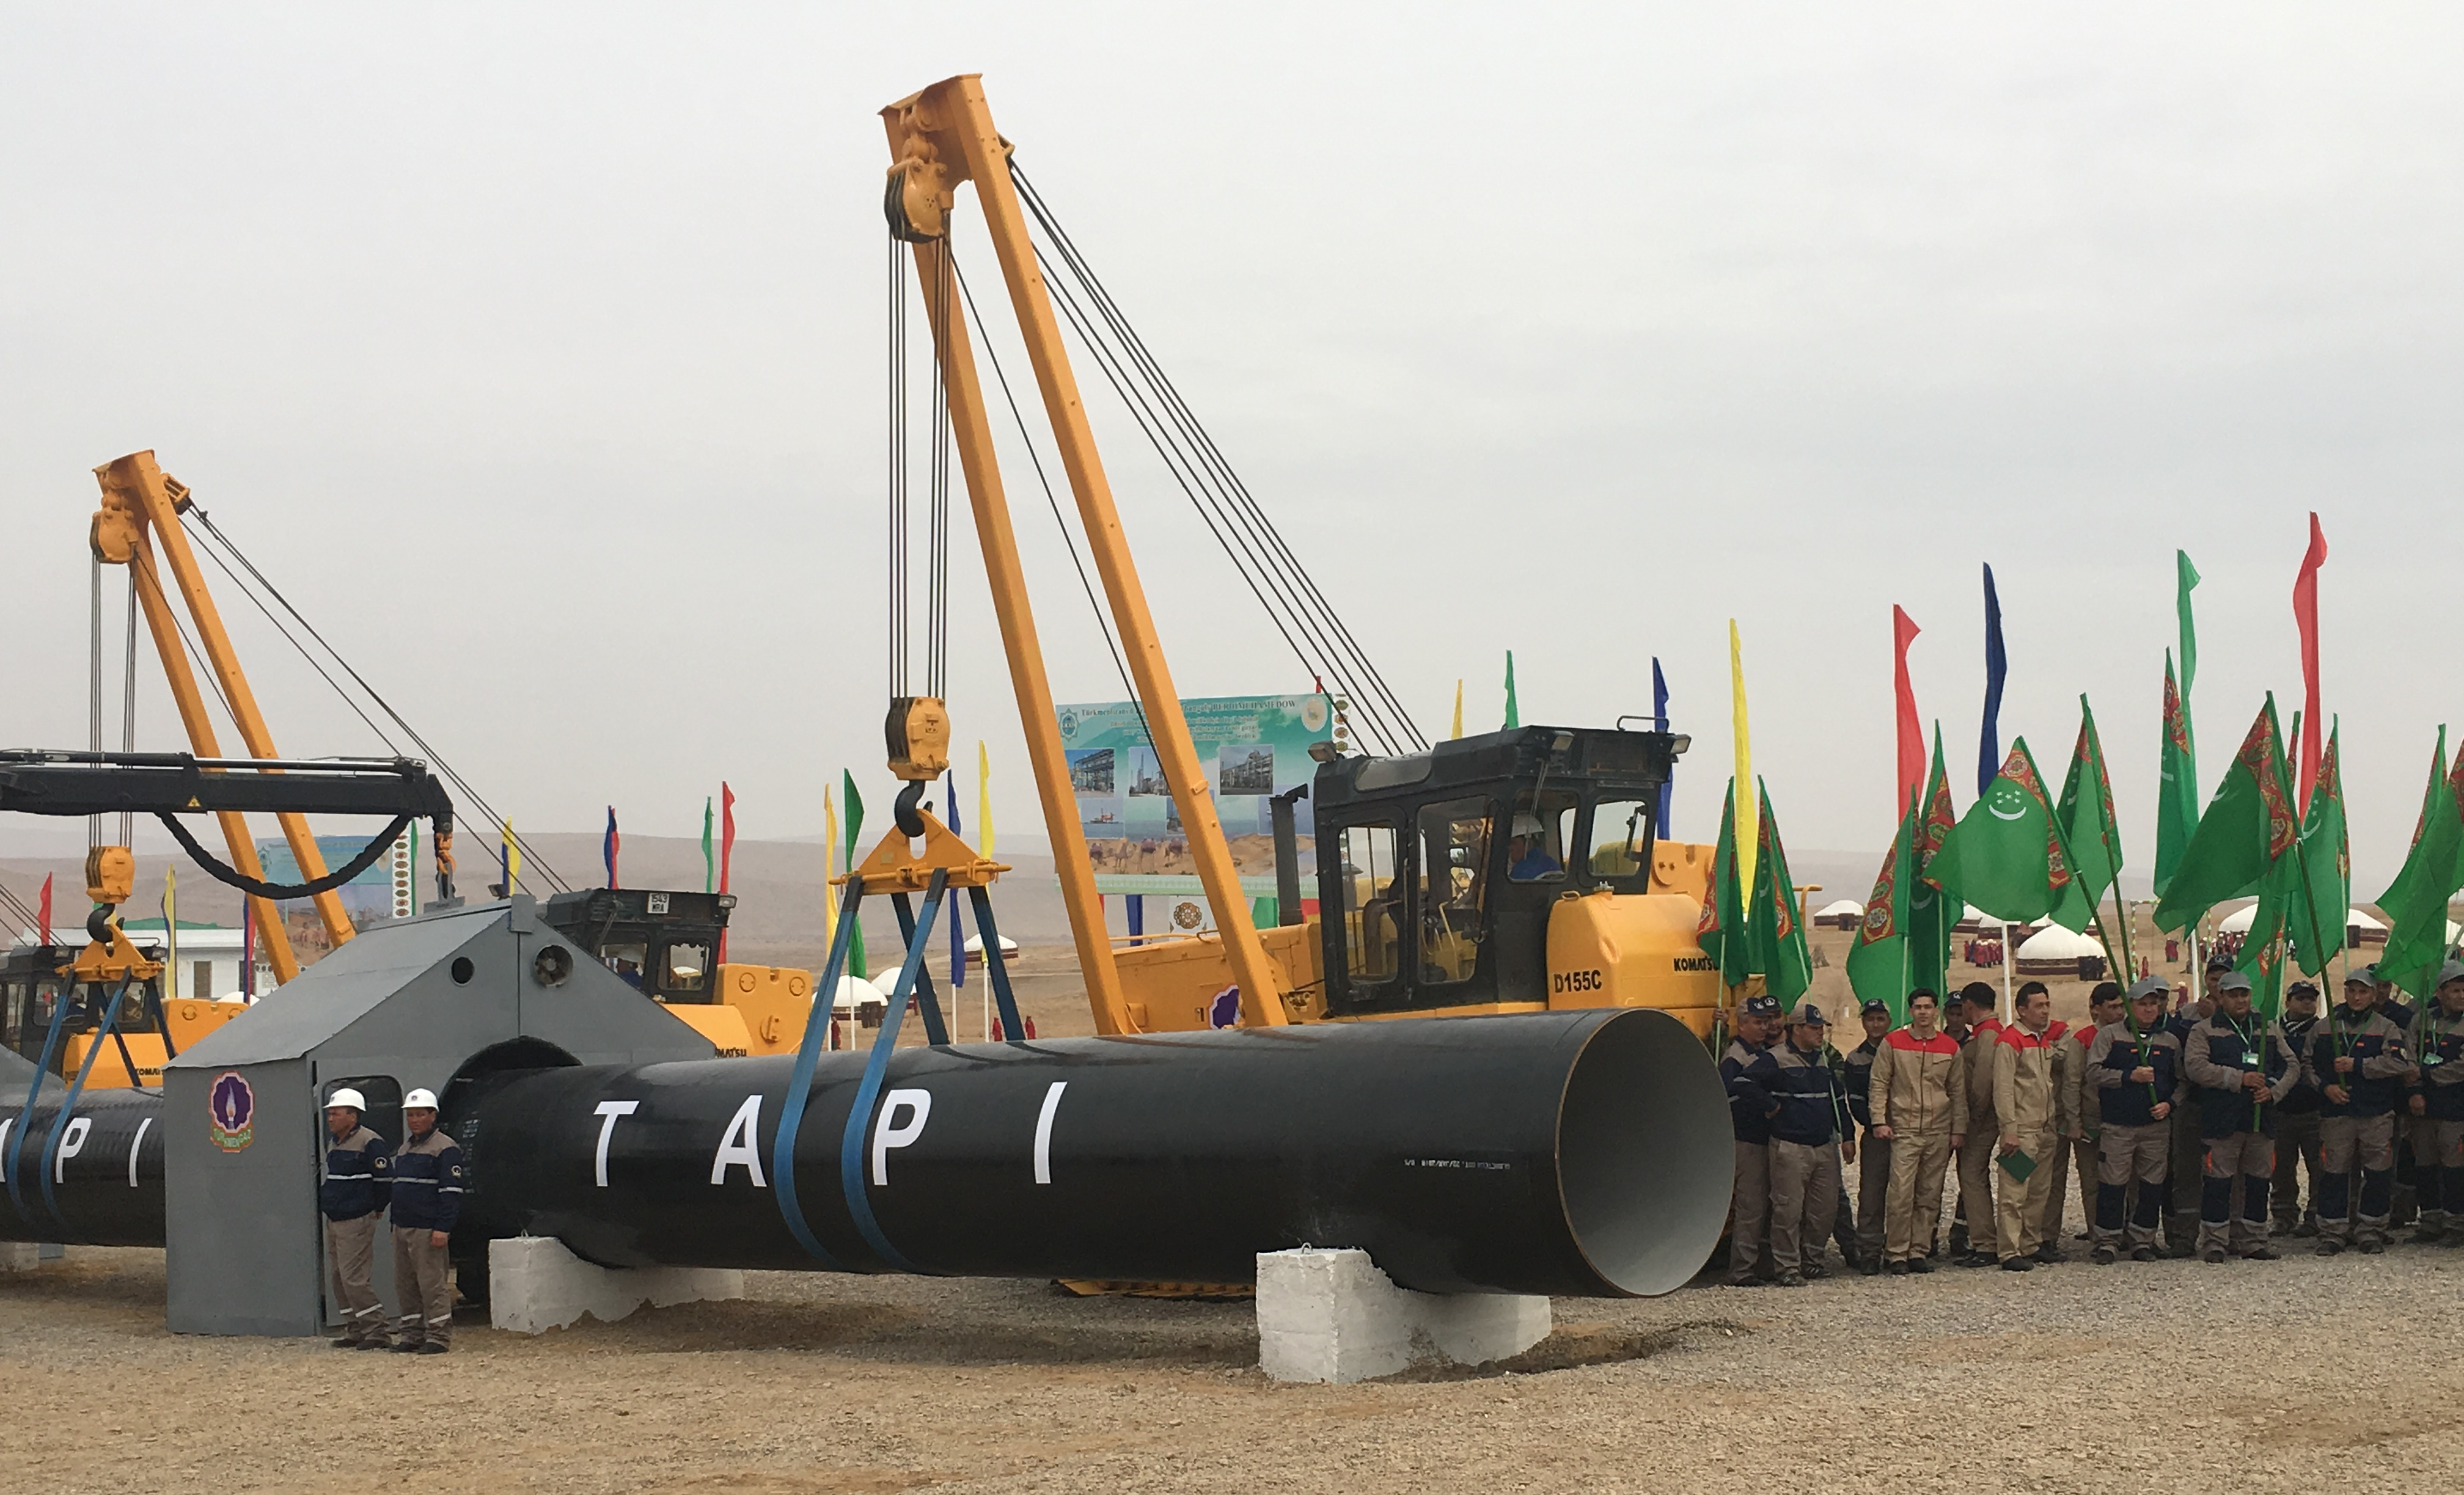 Ceremonia zakończenia budowy turkmeńskiego odcinka gazociągu ziemnego Turkmenistan-Afganistan-Pakistan-Indie (TAPI) Fot. Allan Mustard /wikimedia, licencja Creative Commons